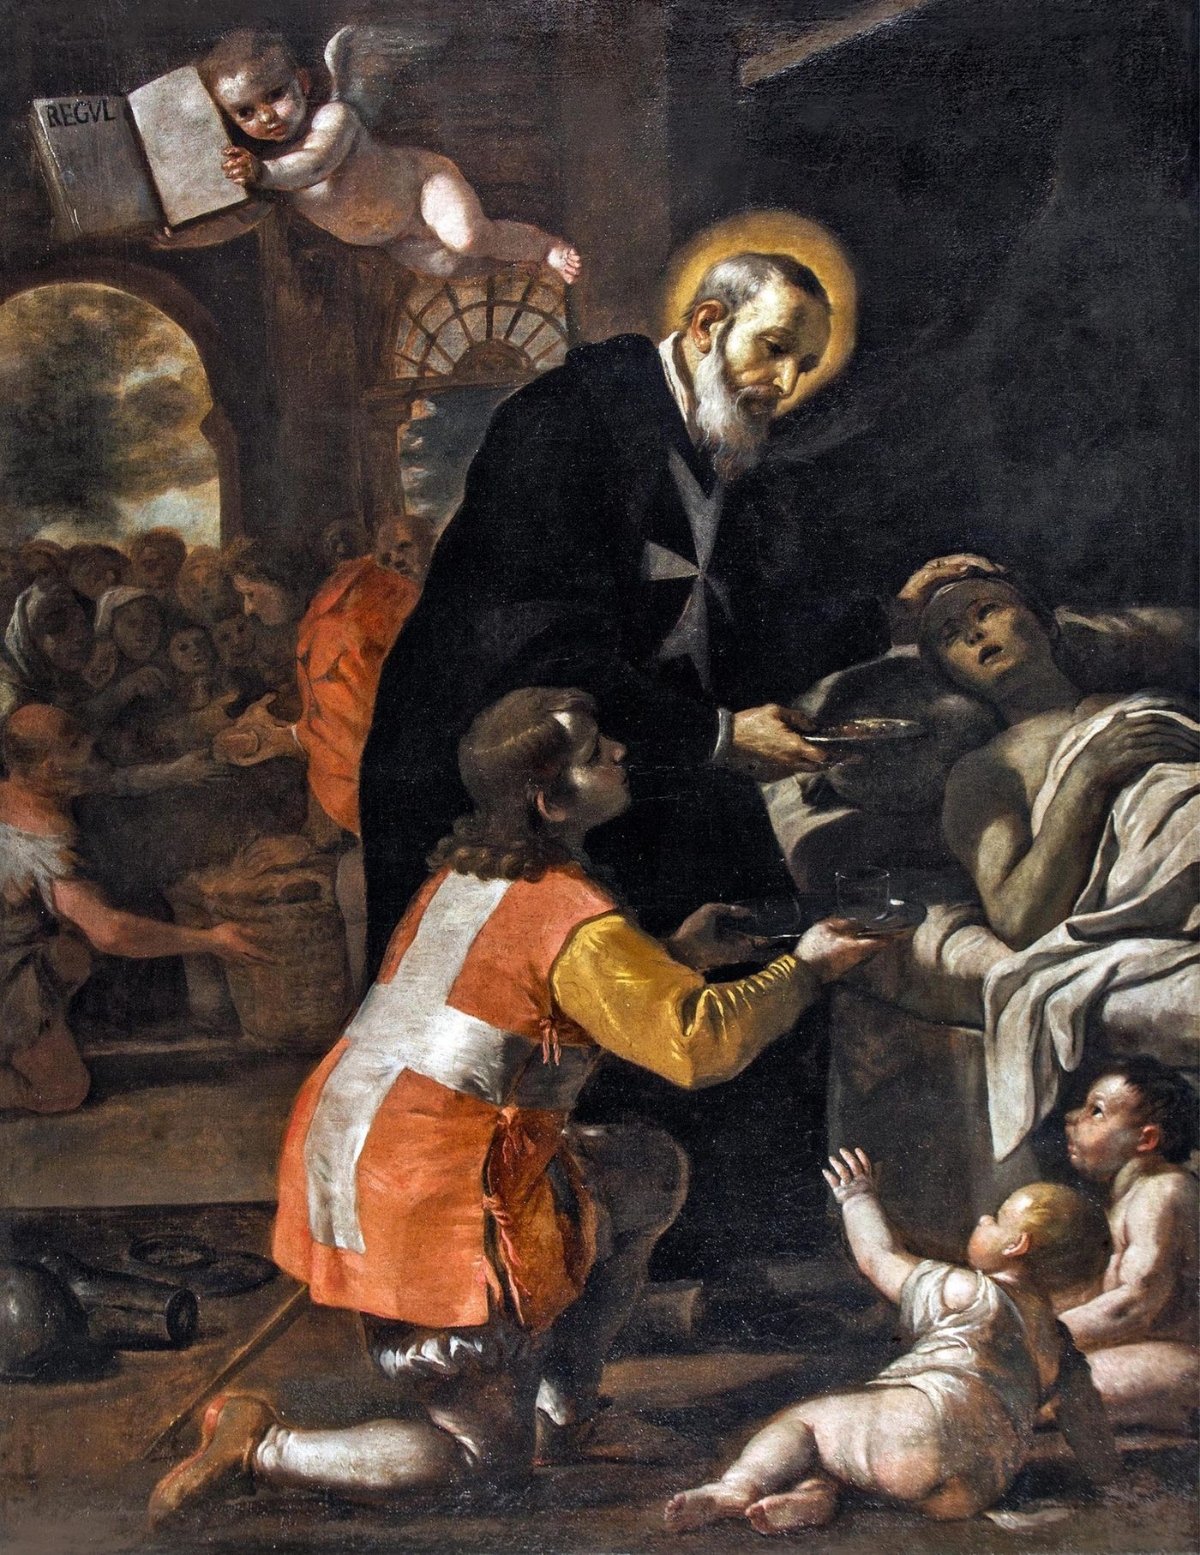 Gerhard bei der Krankenpflege | Mattia Preti, Gemälde im Oratorium des Heiligen Johannes des Täufers, St. John's Co-Cathedral, Valletta, um 1680 (c) © Bild: www.stjohnscocathedral.com